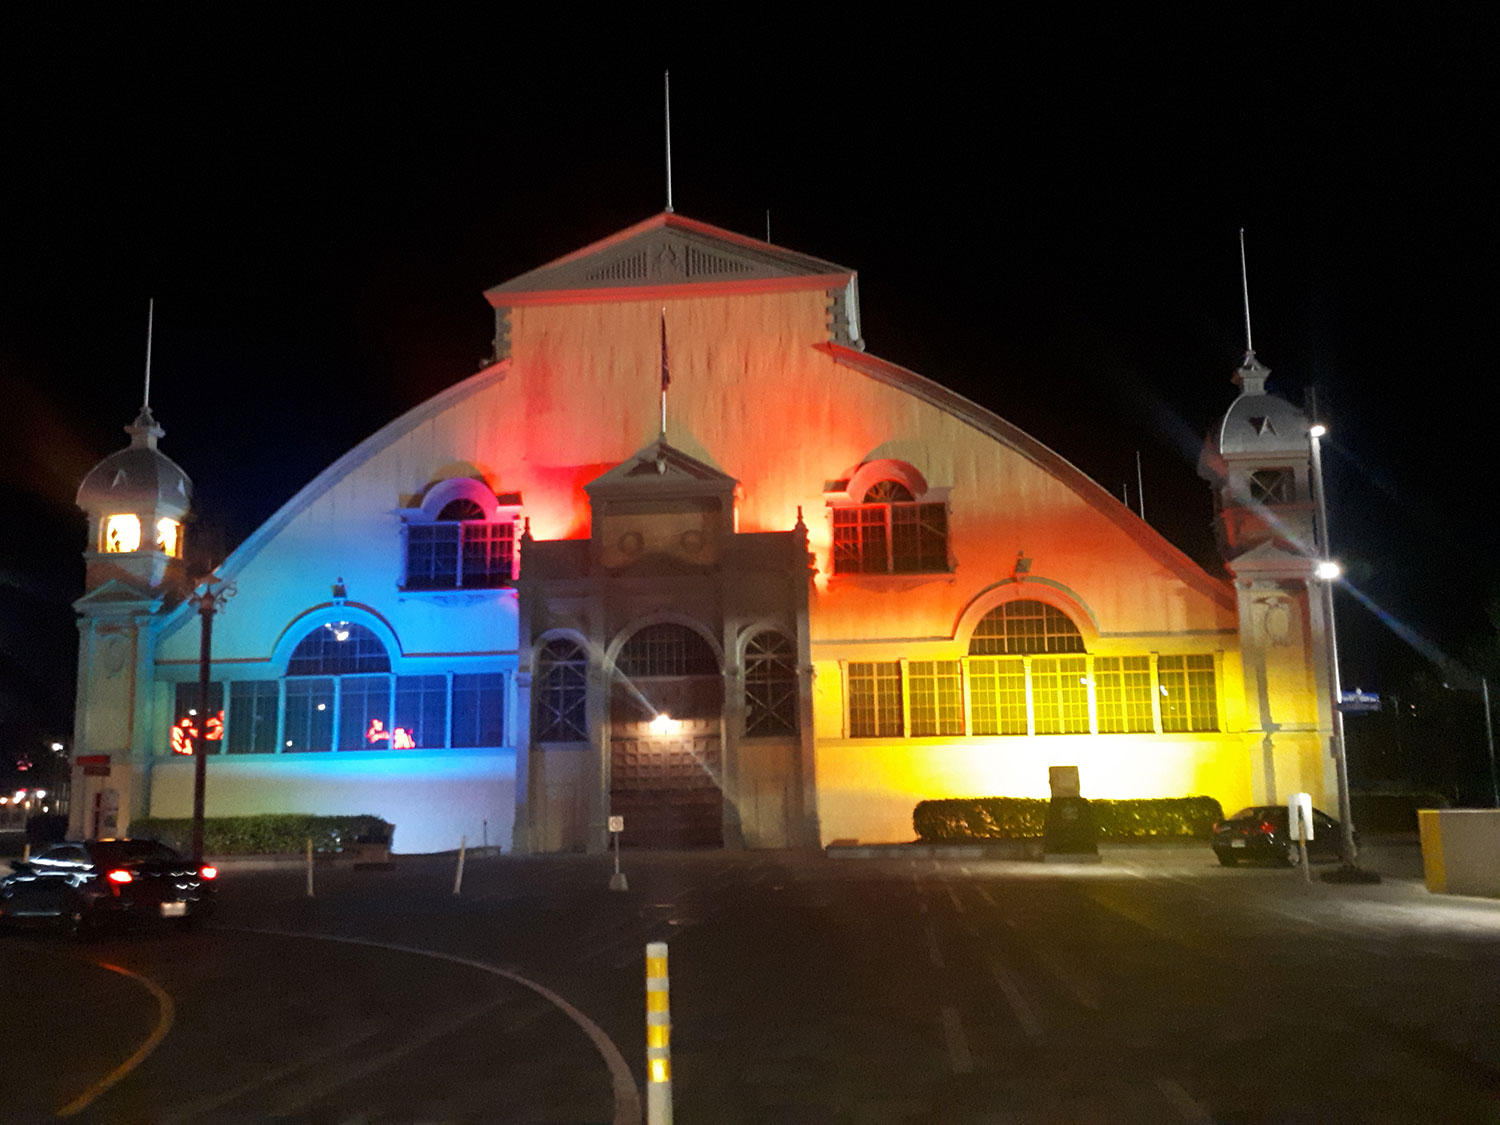 Aberdeen Pavillion lit up with rainbow lights